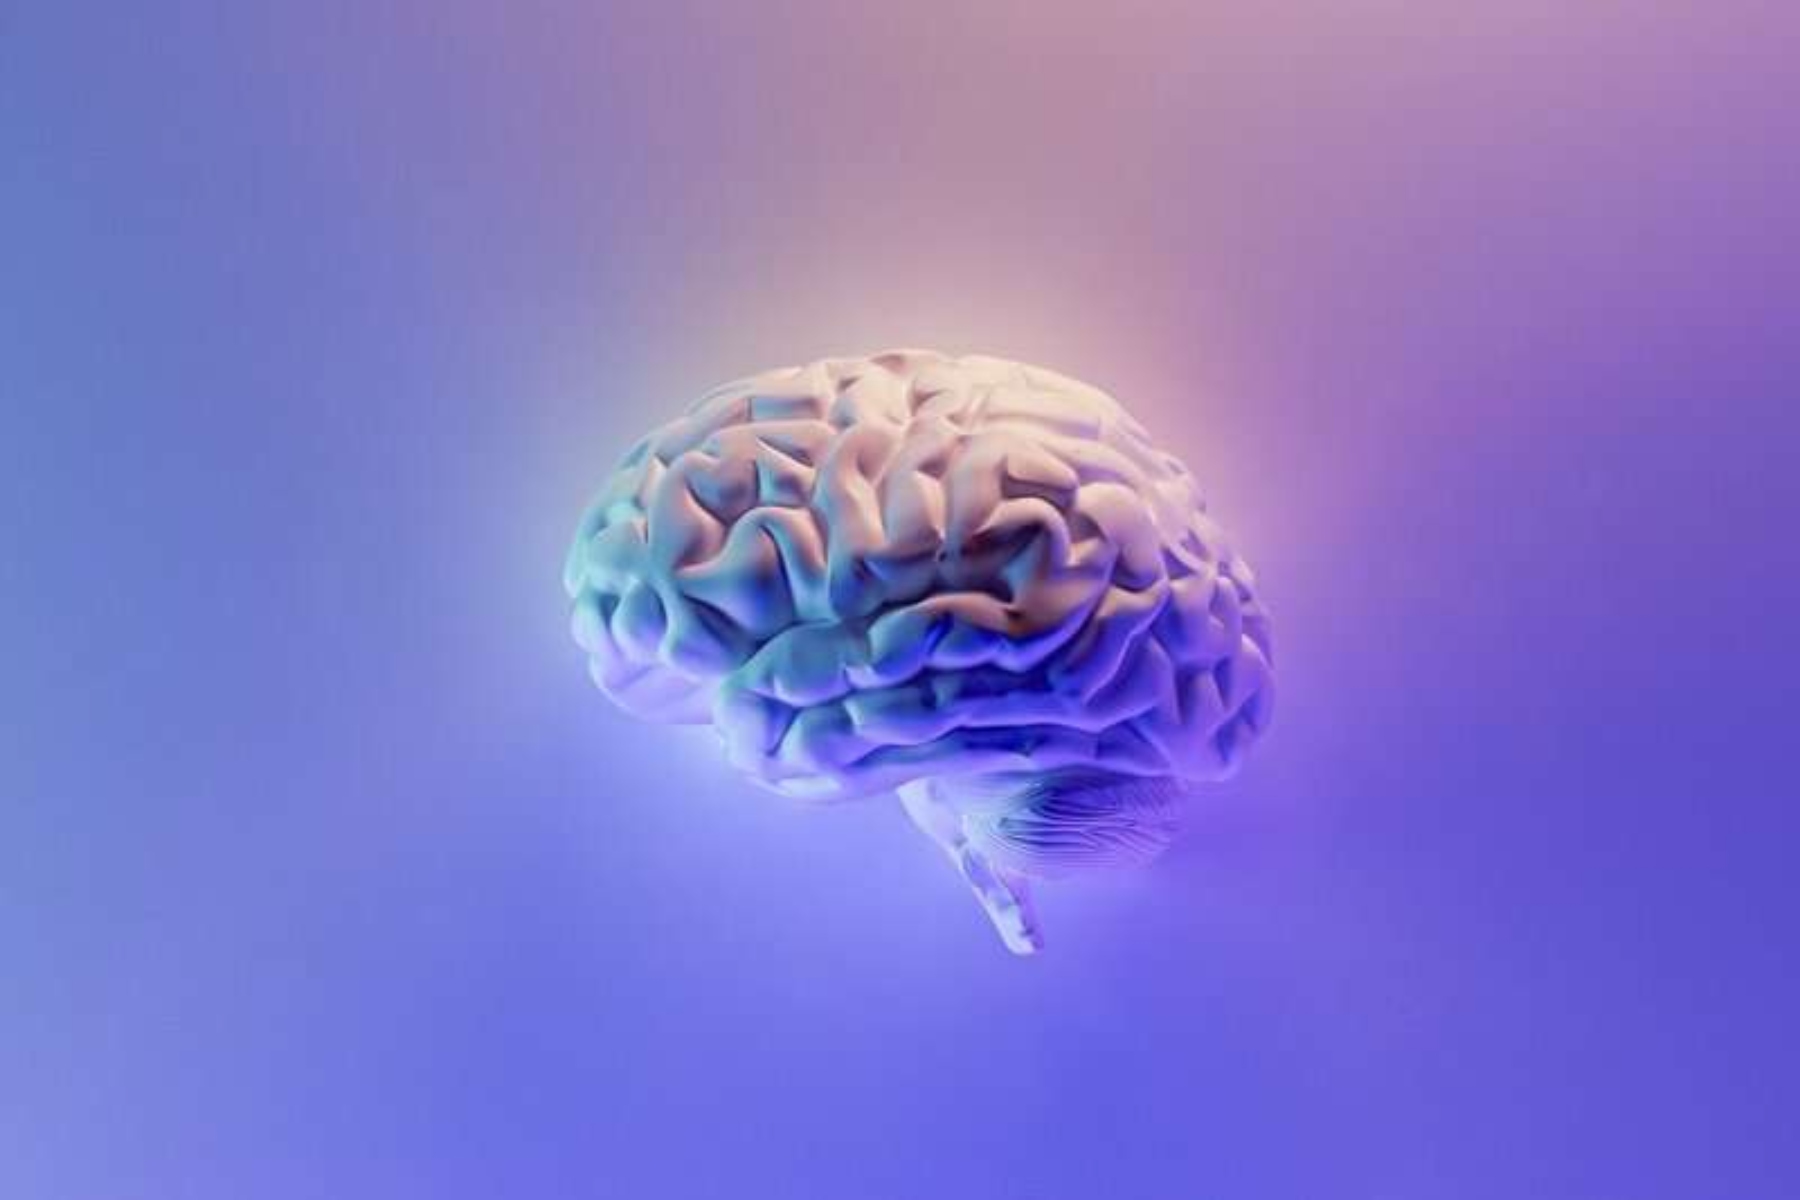 Ο εγκέφαλος αντιμετωπίζει τη γήρανση επιστρατεύοντας άλλες περιοχές του εγκεφάλου